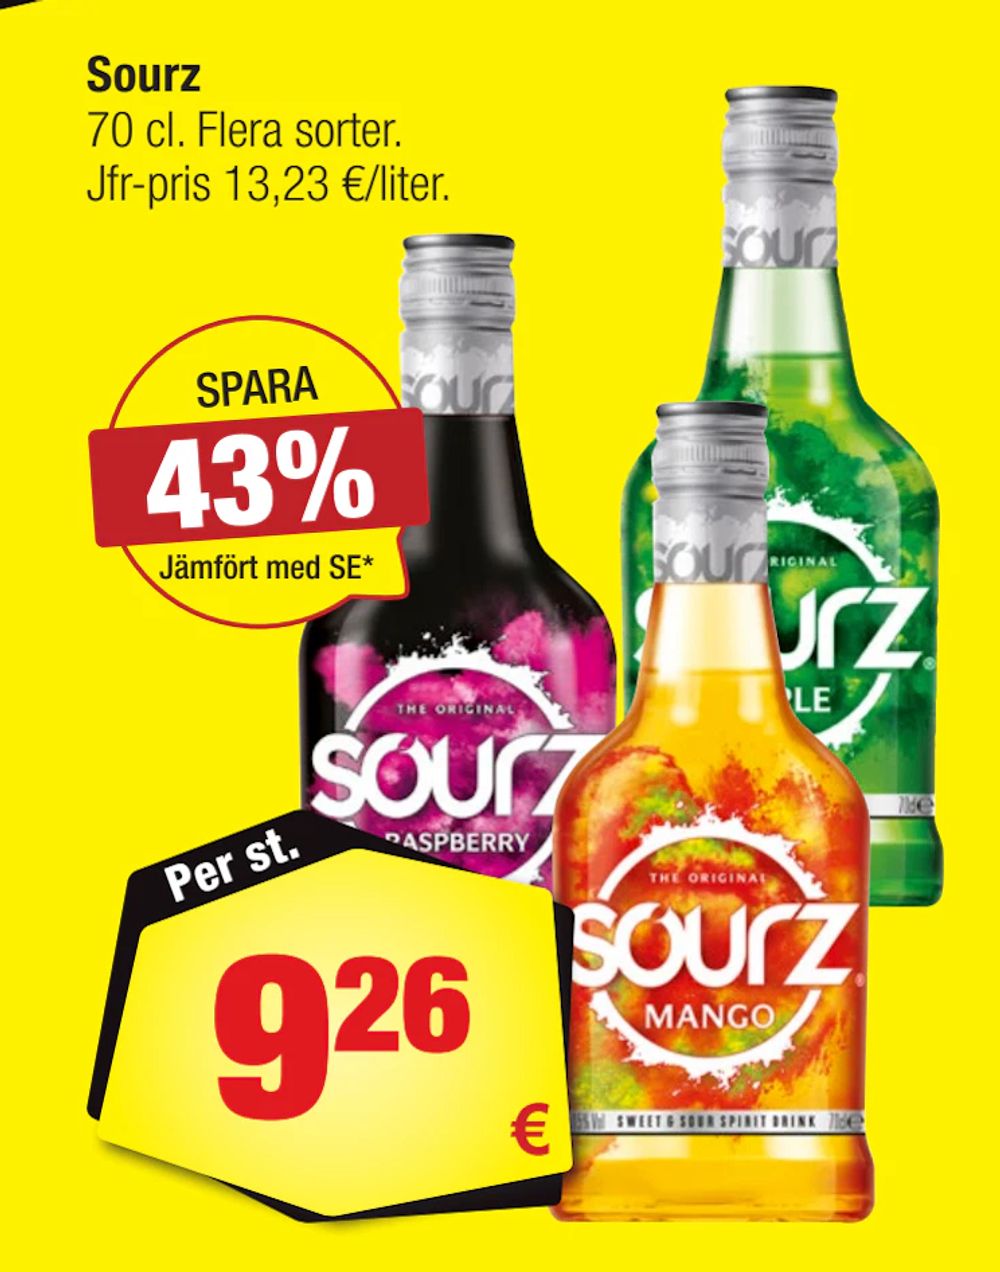 Erbjudanden på Sourz från Calle för 9,26 €